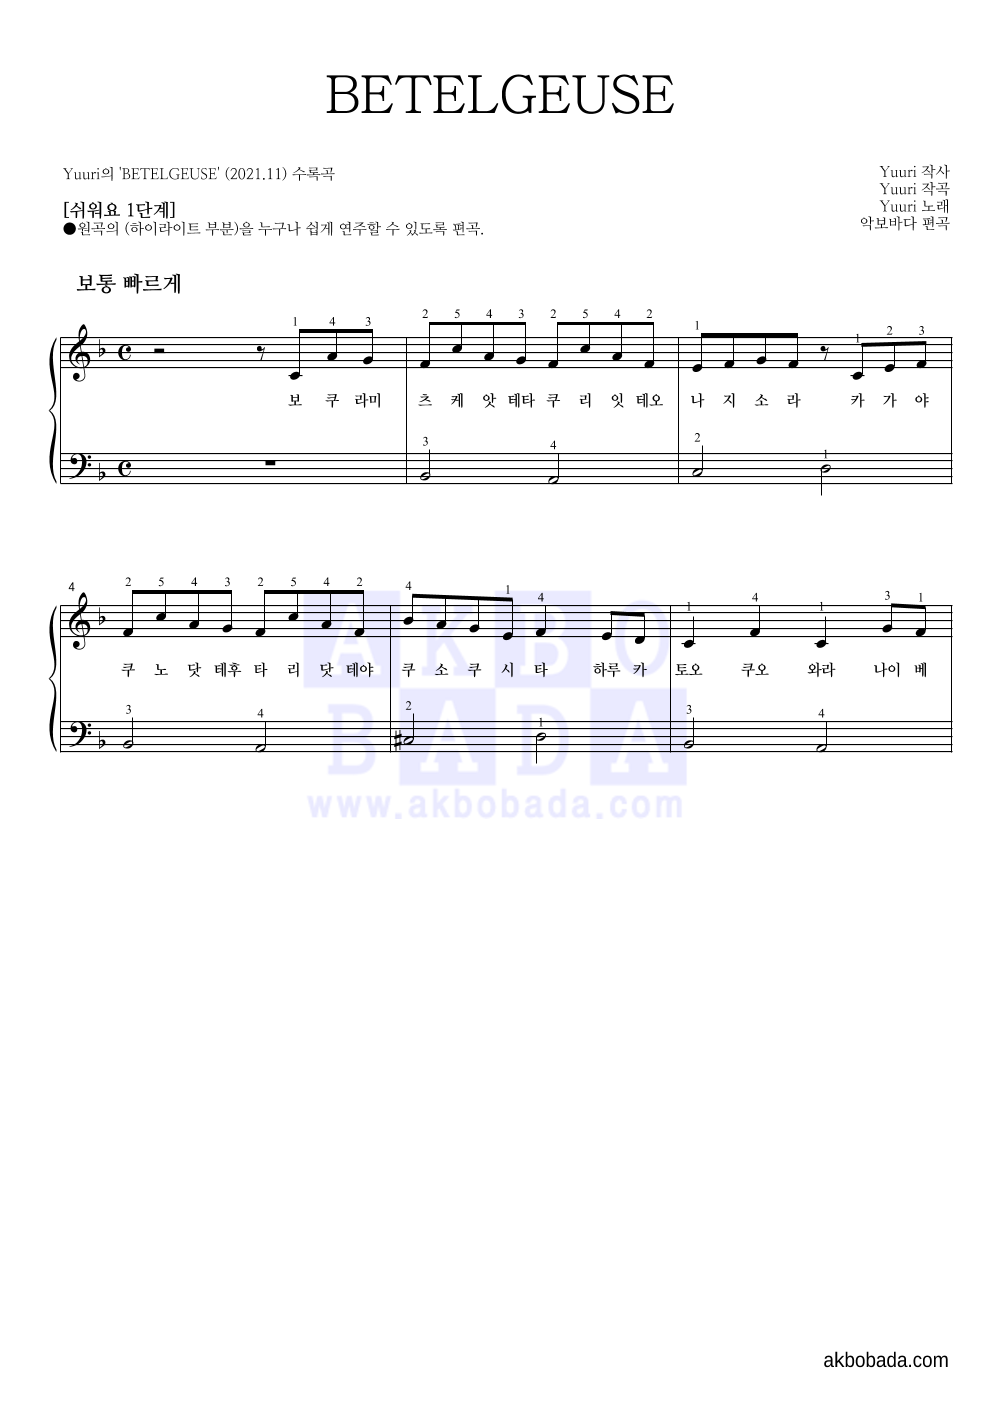 Yuuri - BETELGEUSE 피아노2단-쉬워요 악보 